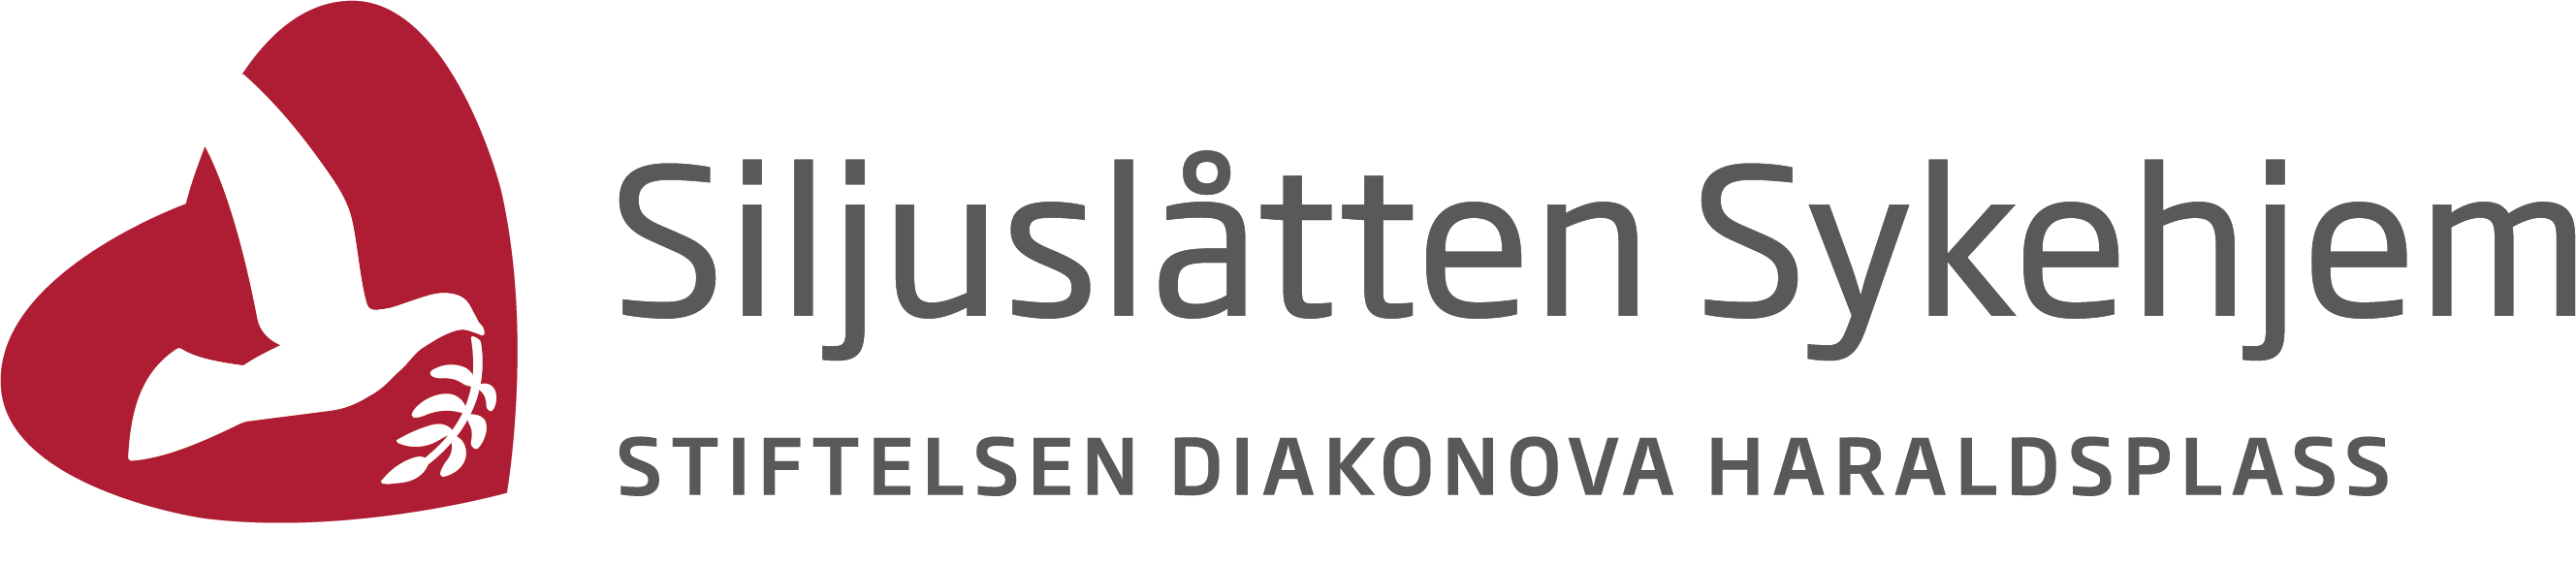 Siljuslåtten Sykehjem logo